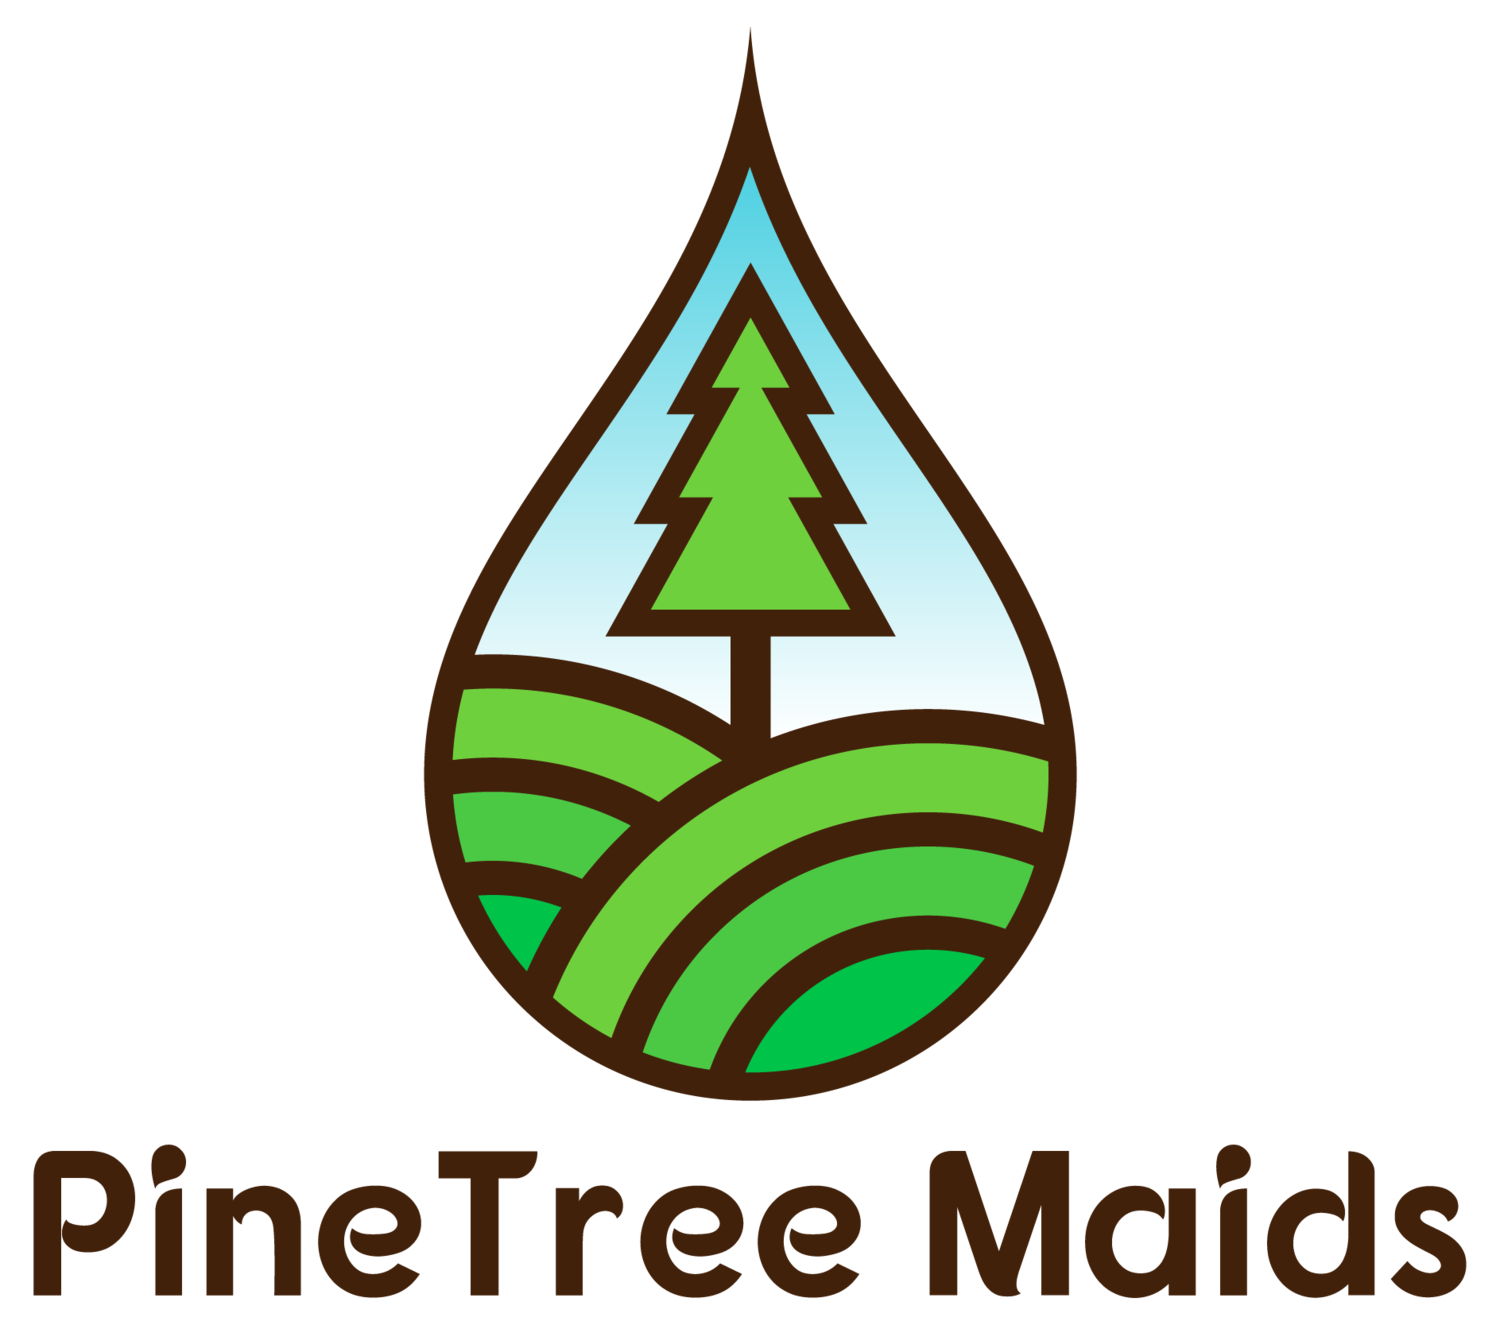 Pinetree Maids of Atlanta